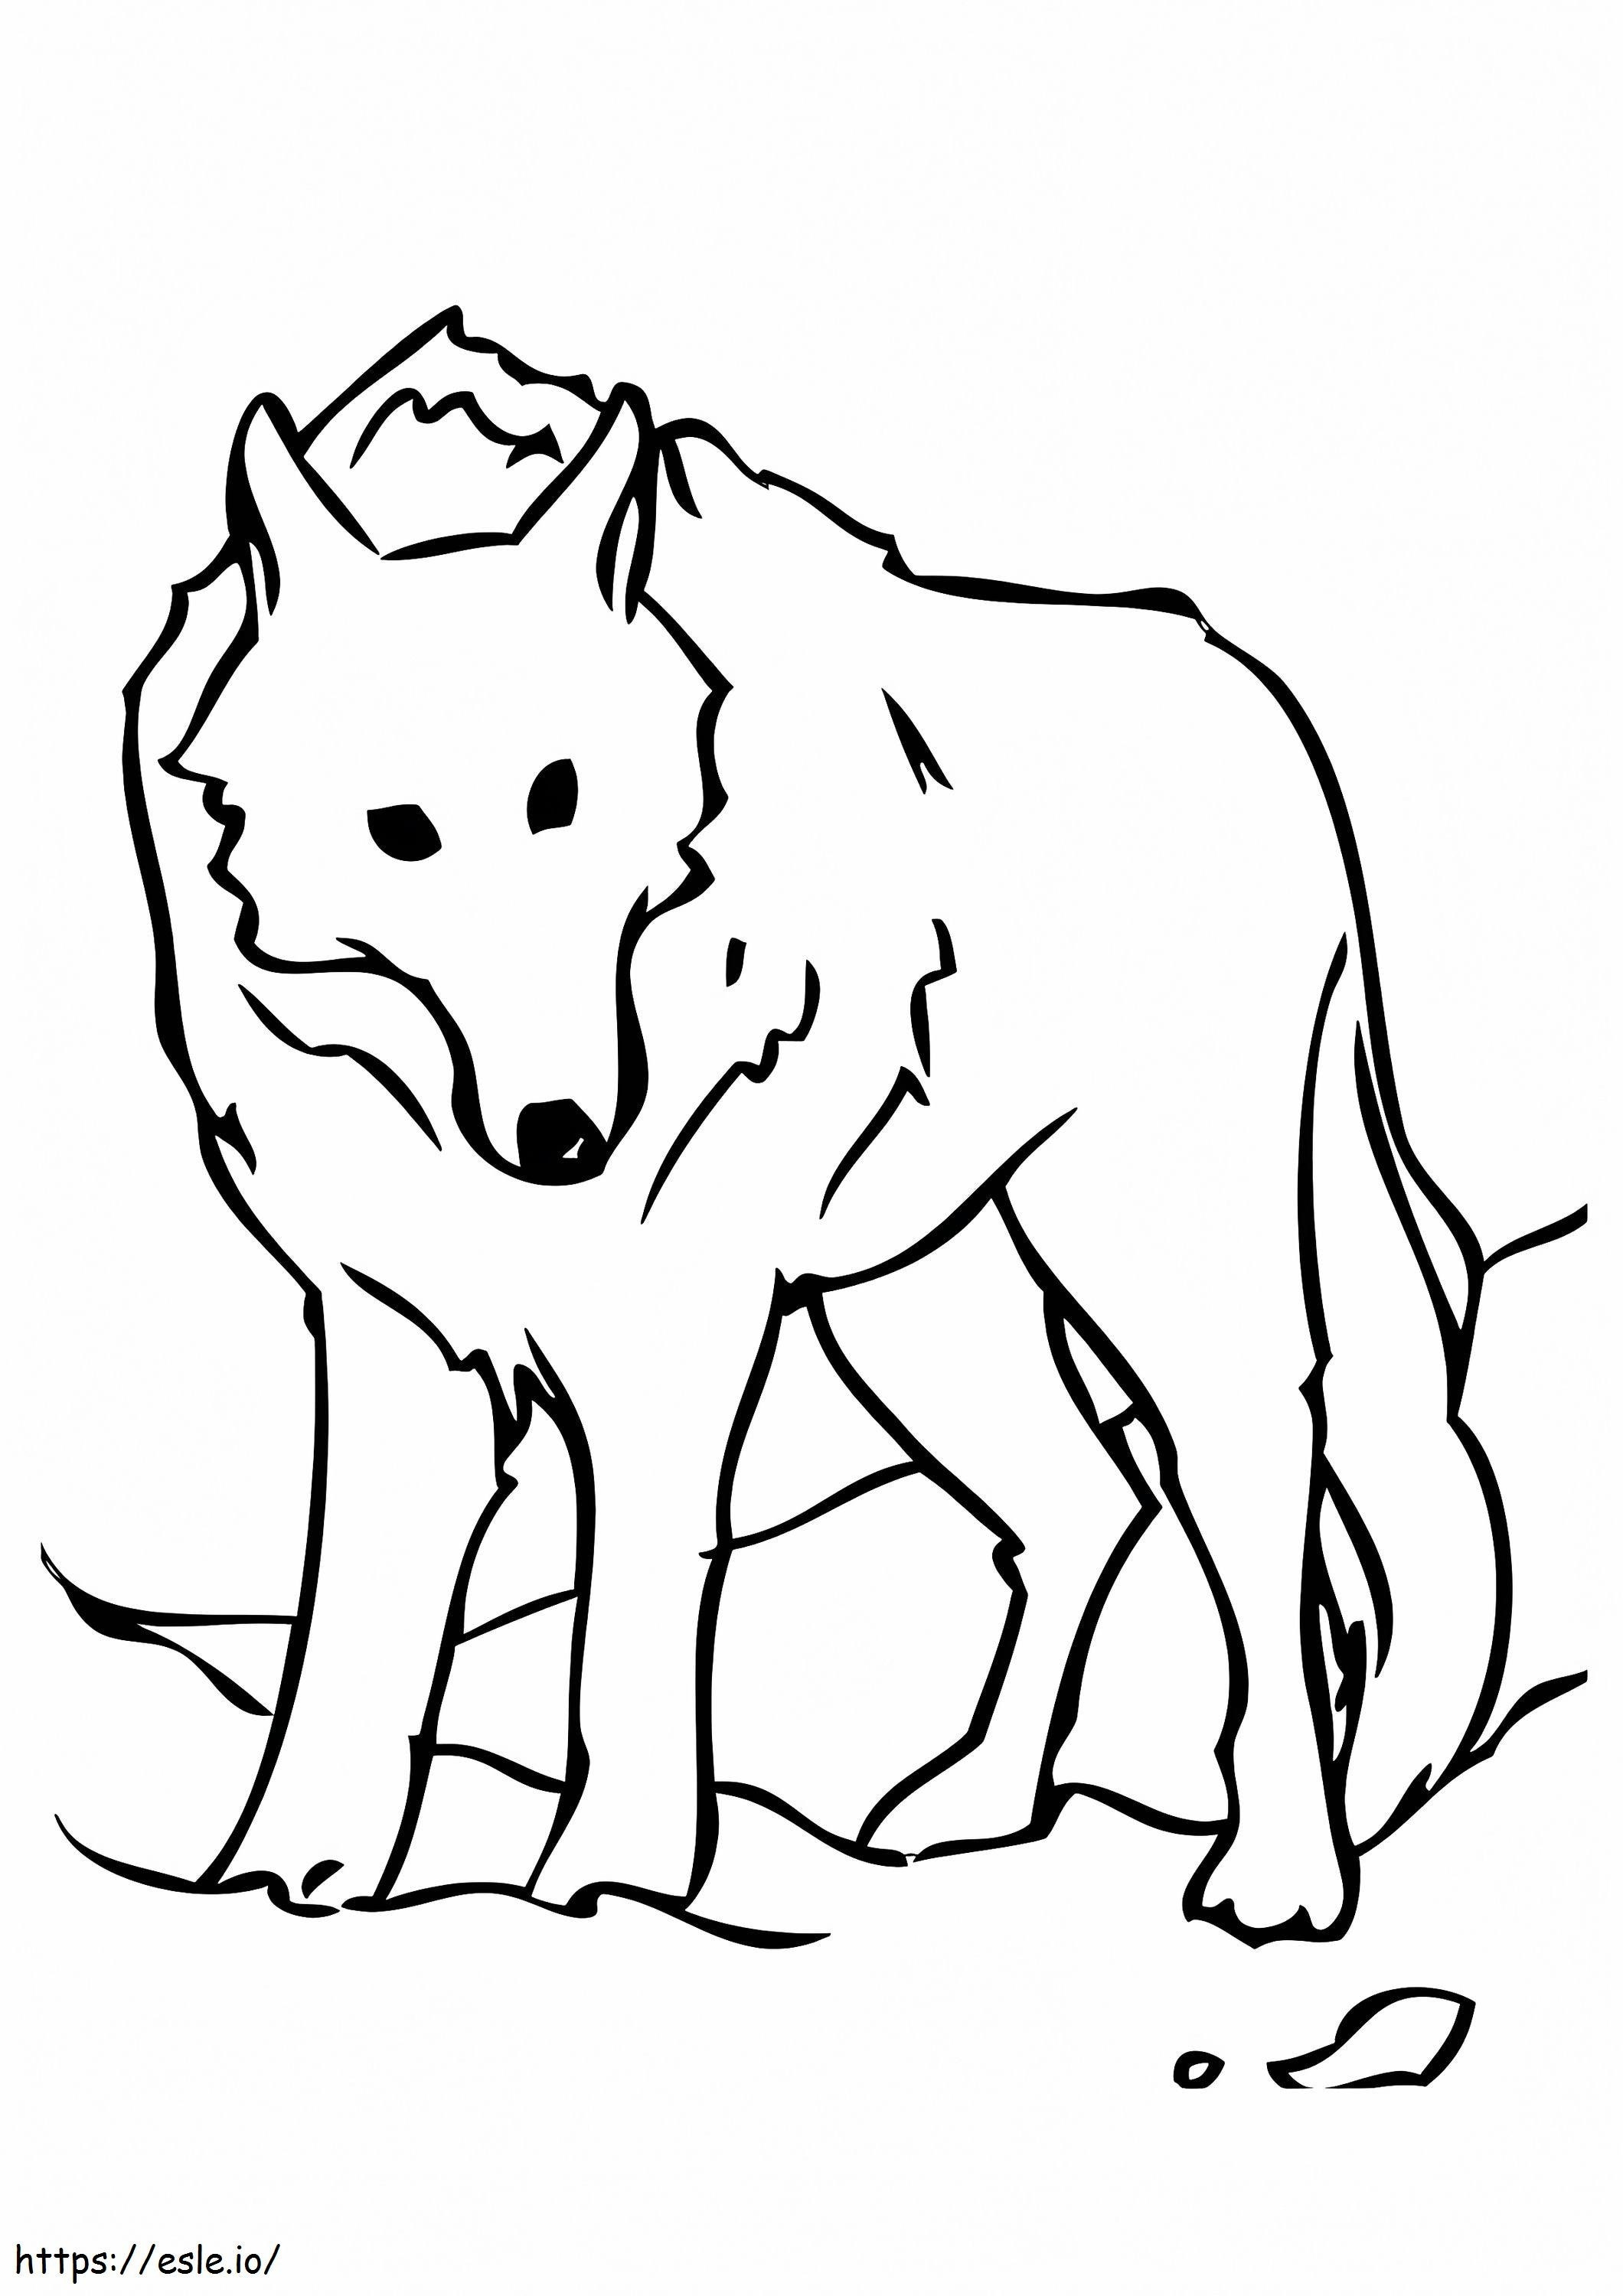  De stationaire wolf A4 kleurplaat kleurplaat